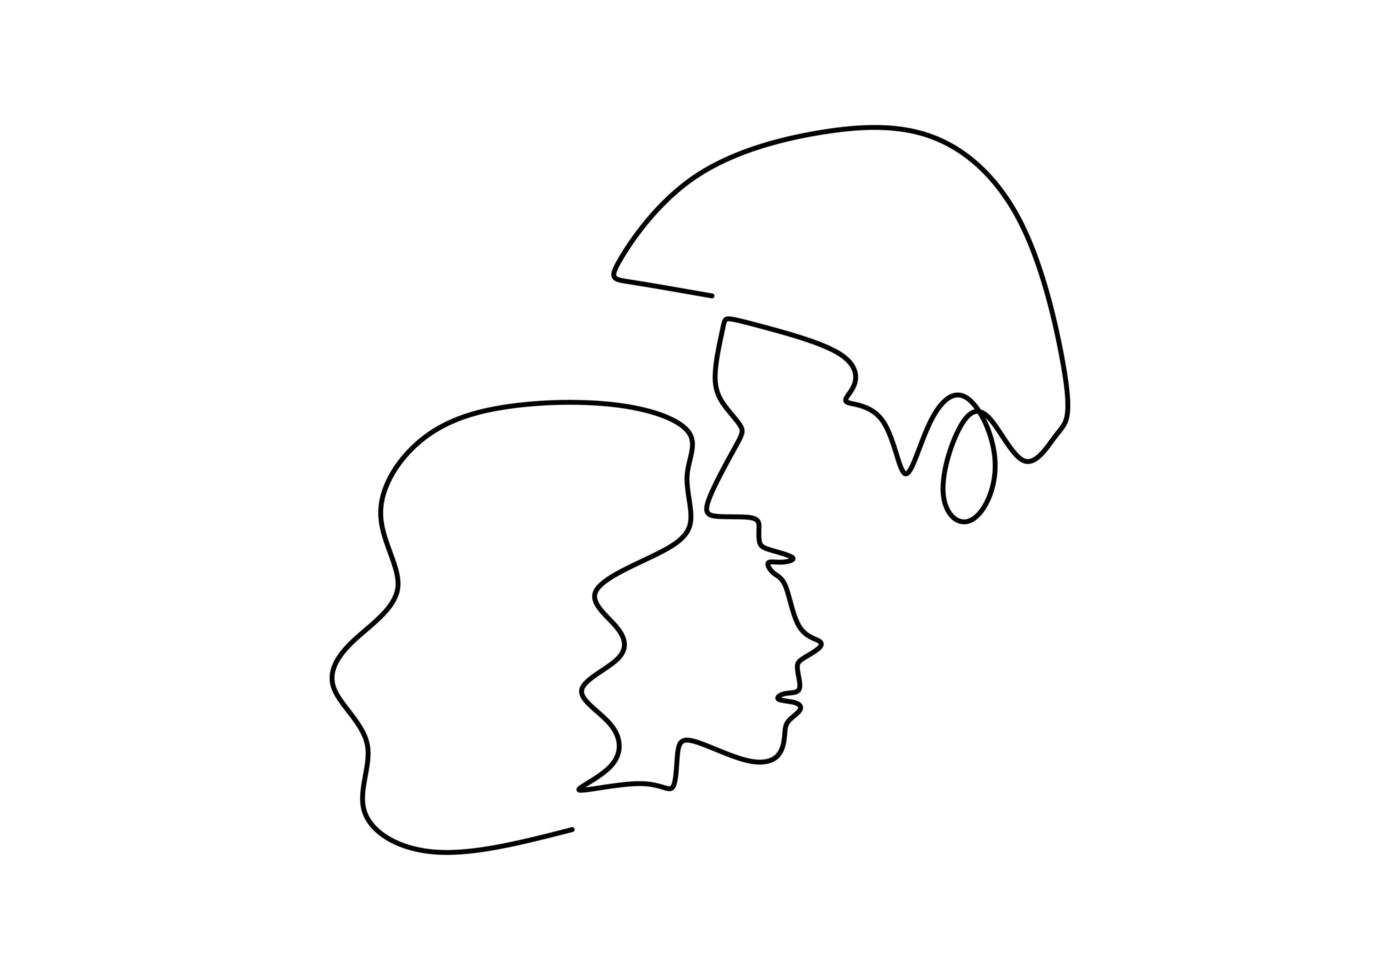 dibujo continuo de una línea. amorosa pareja mujer y hombre en relación de amor. ilustración vectorial, estilo minimalista. vector